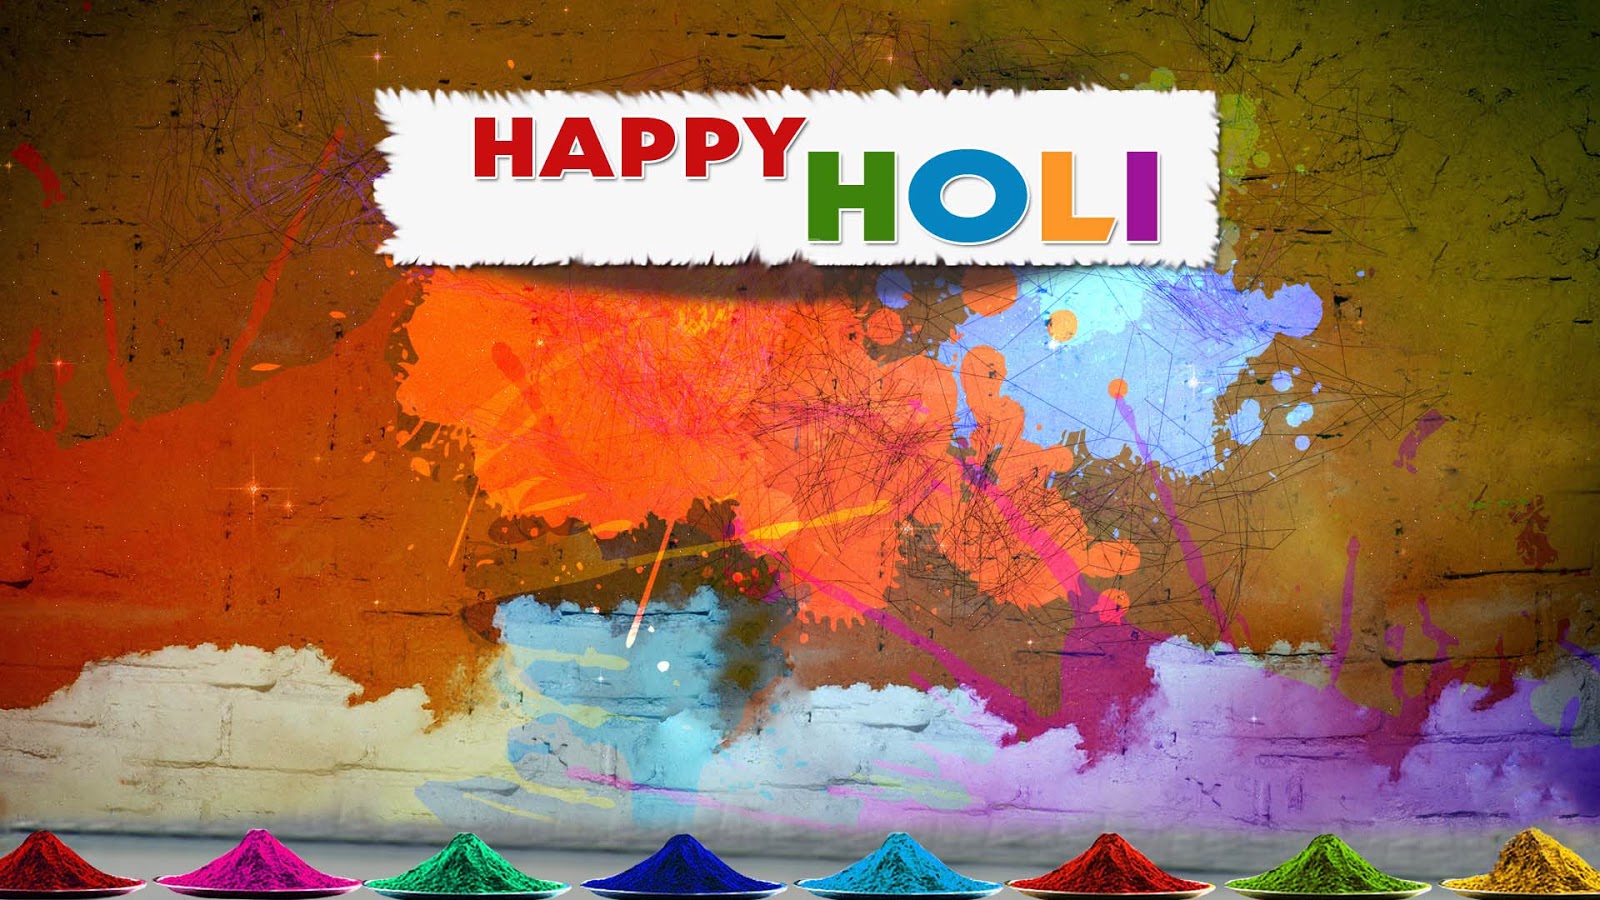 2017 Ka Wallpaper - Happy Holi Full Hd - 1600x900 Wallpaper 